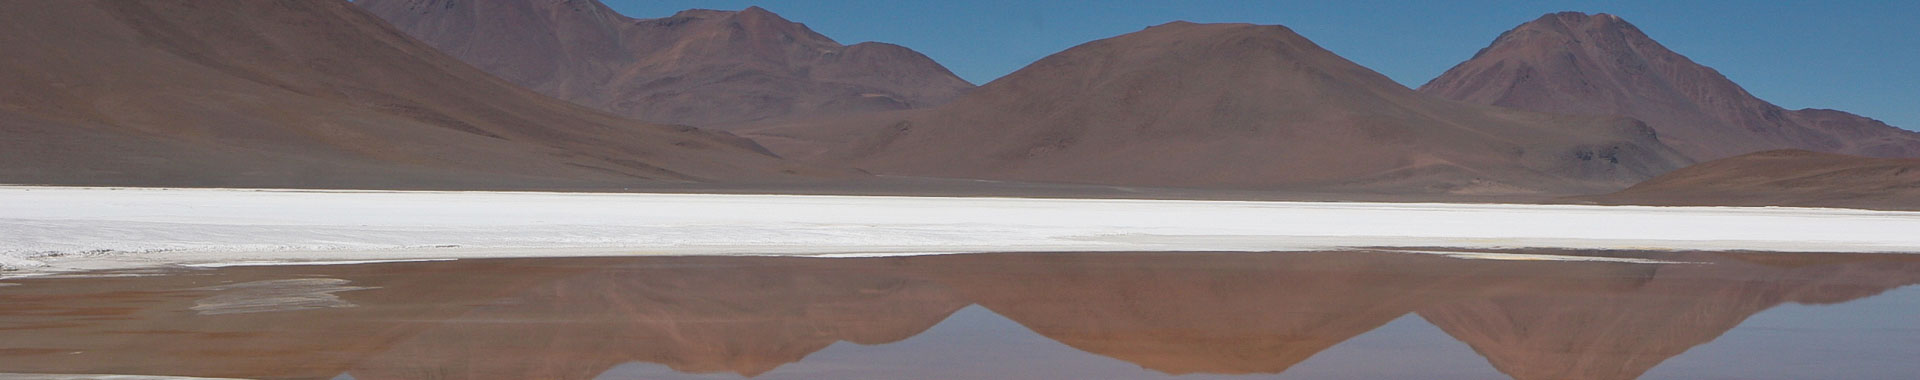 Chile - Alto Atacama - Paseos - Salar Pujsa